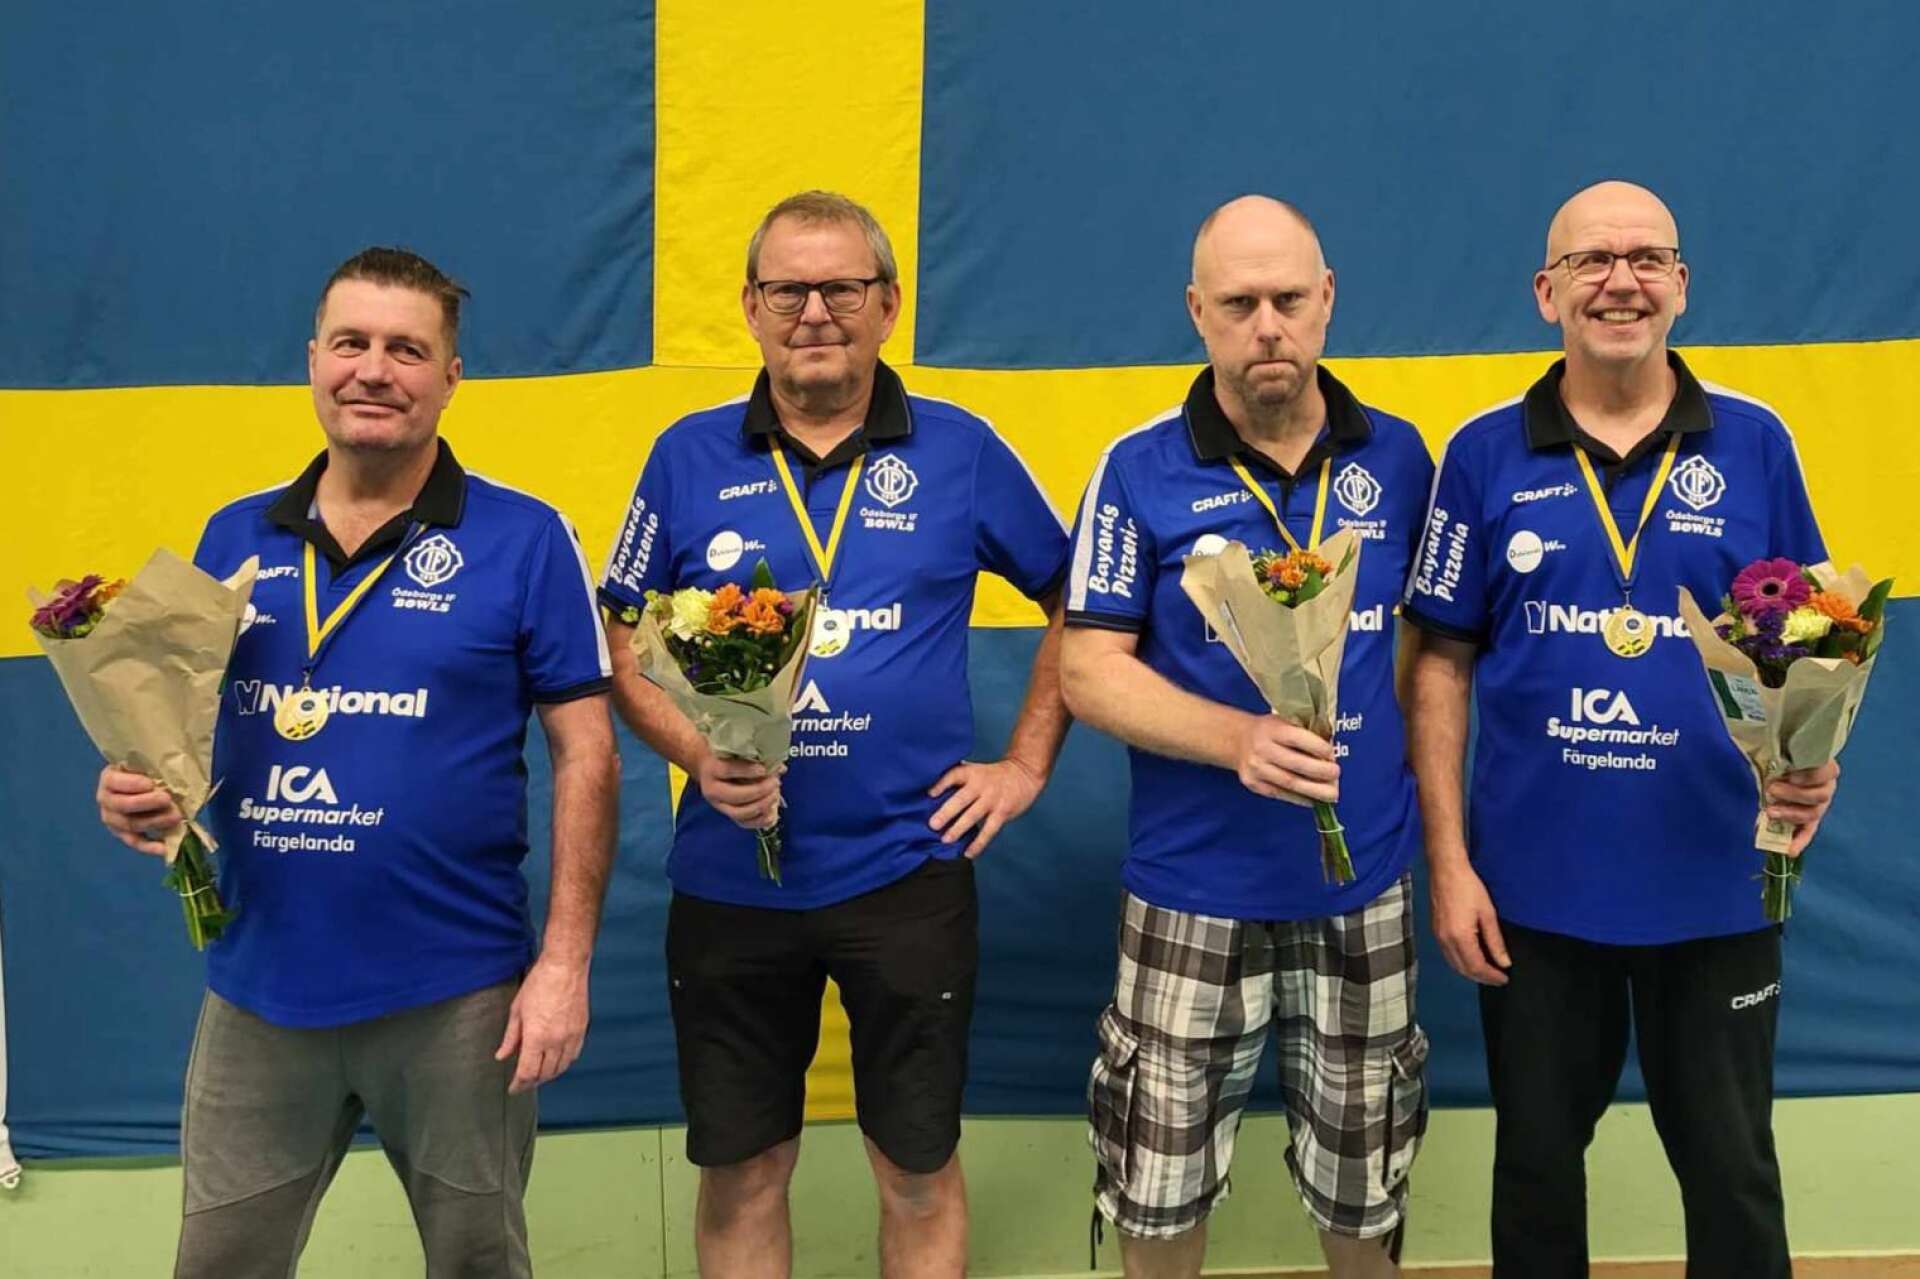 Ödeborgs IF vann guld i fyrmanna-SM. Här är laget, från vänster: Vincent Constant, Conny Svensson, Mikael Larsson och Joel Häger.